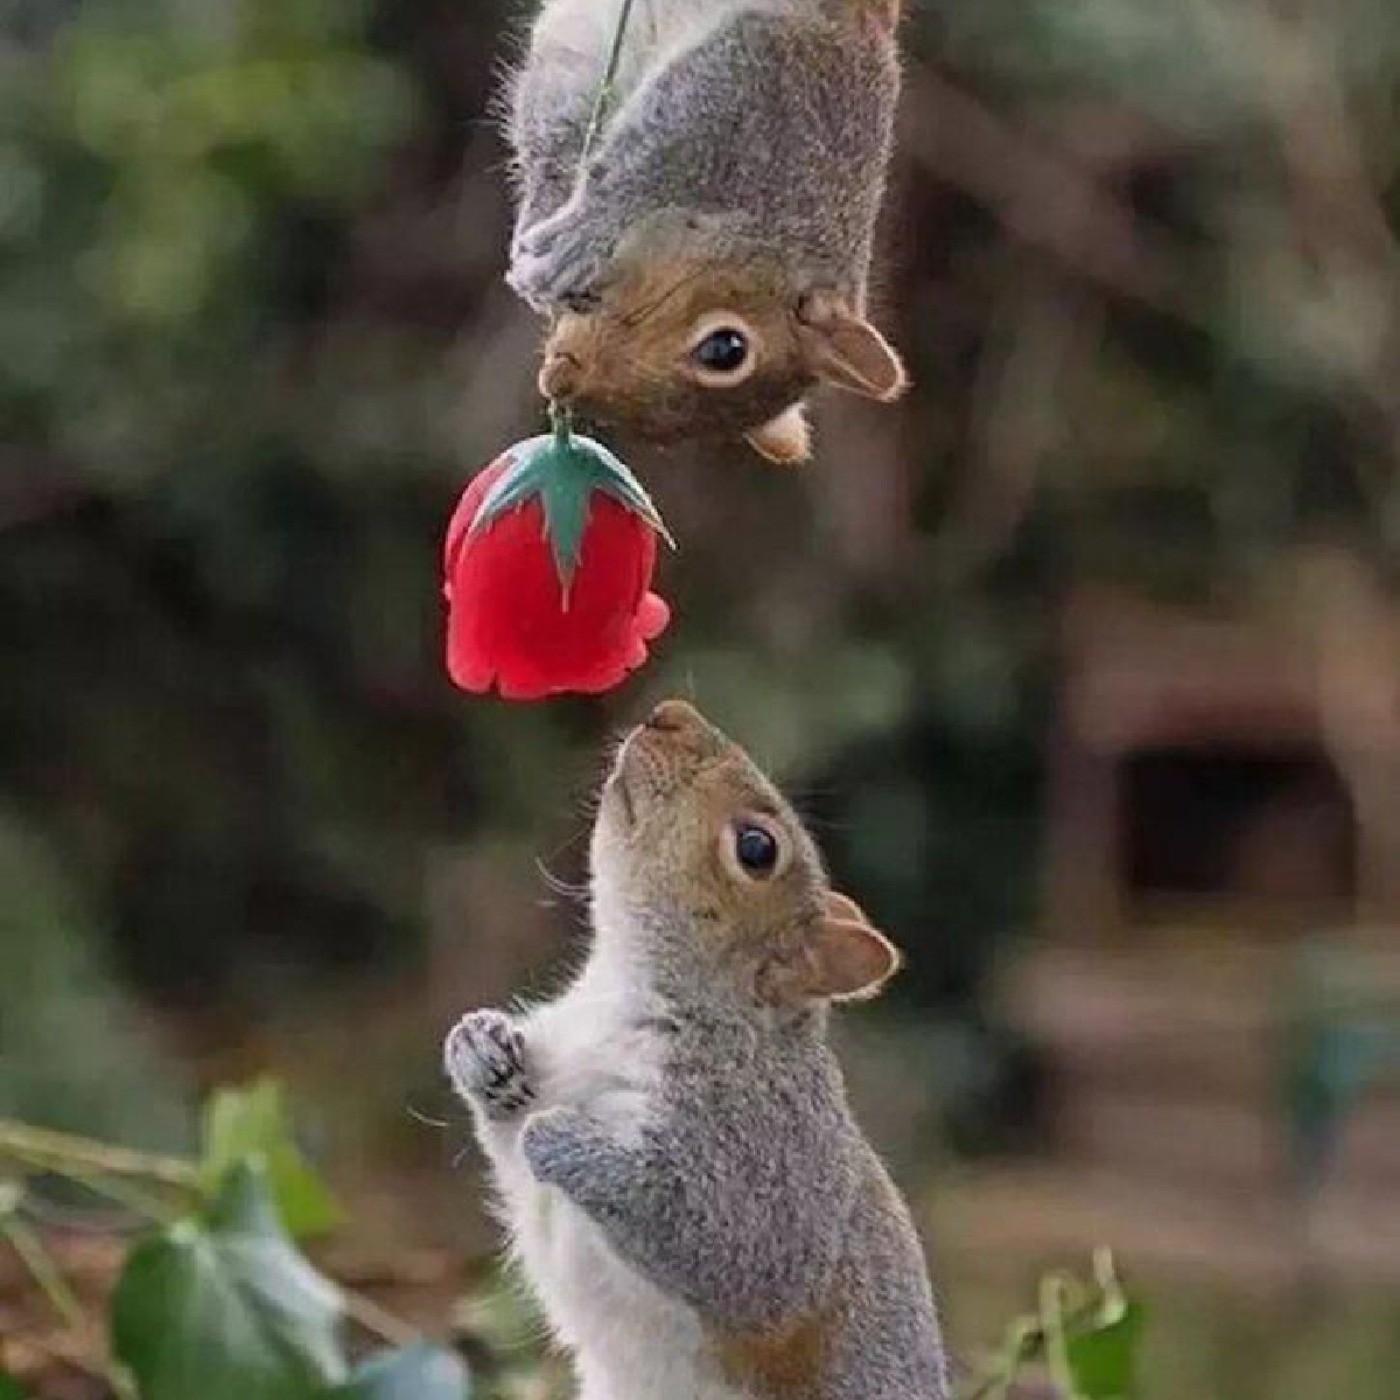 میدونستید سنجاب وقتی عاشق میشه به عشقش گل هدیه میده..!!  